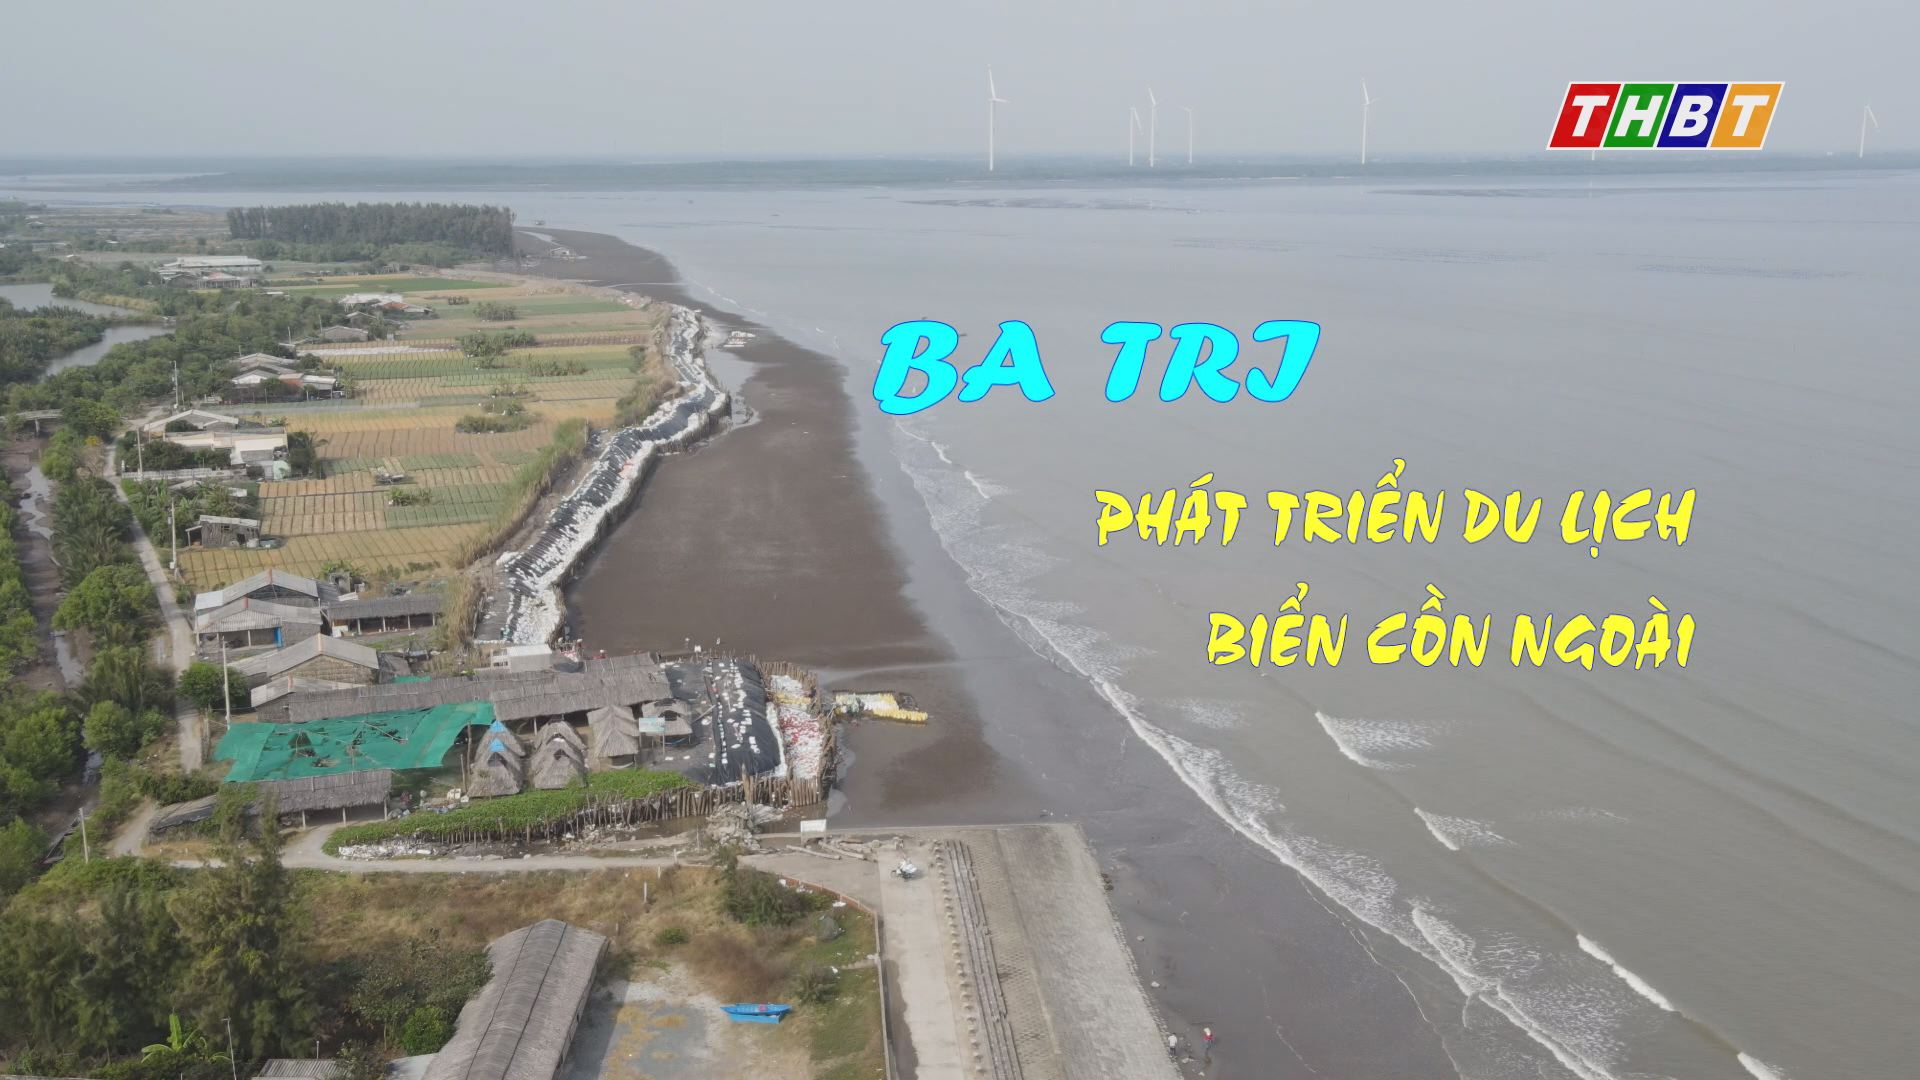 Thi đua Đồng khởi mới - Ba Tri phát triển du lịch biển cồn ngoài